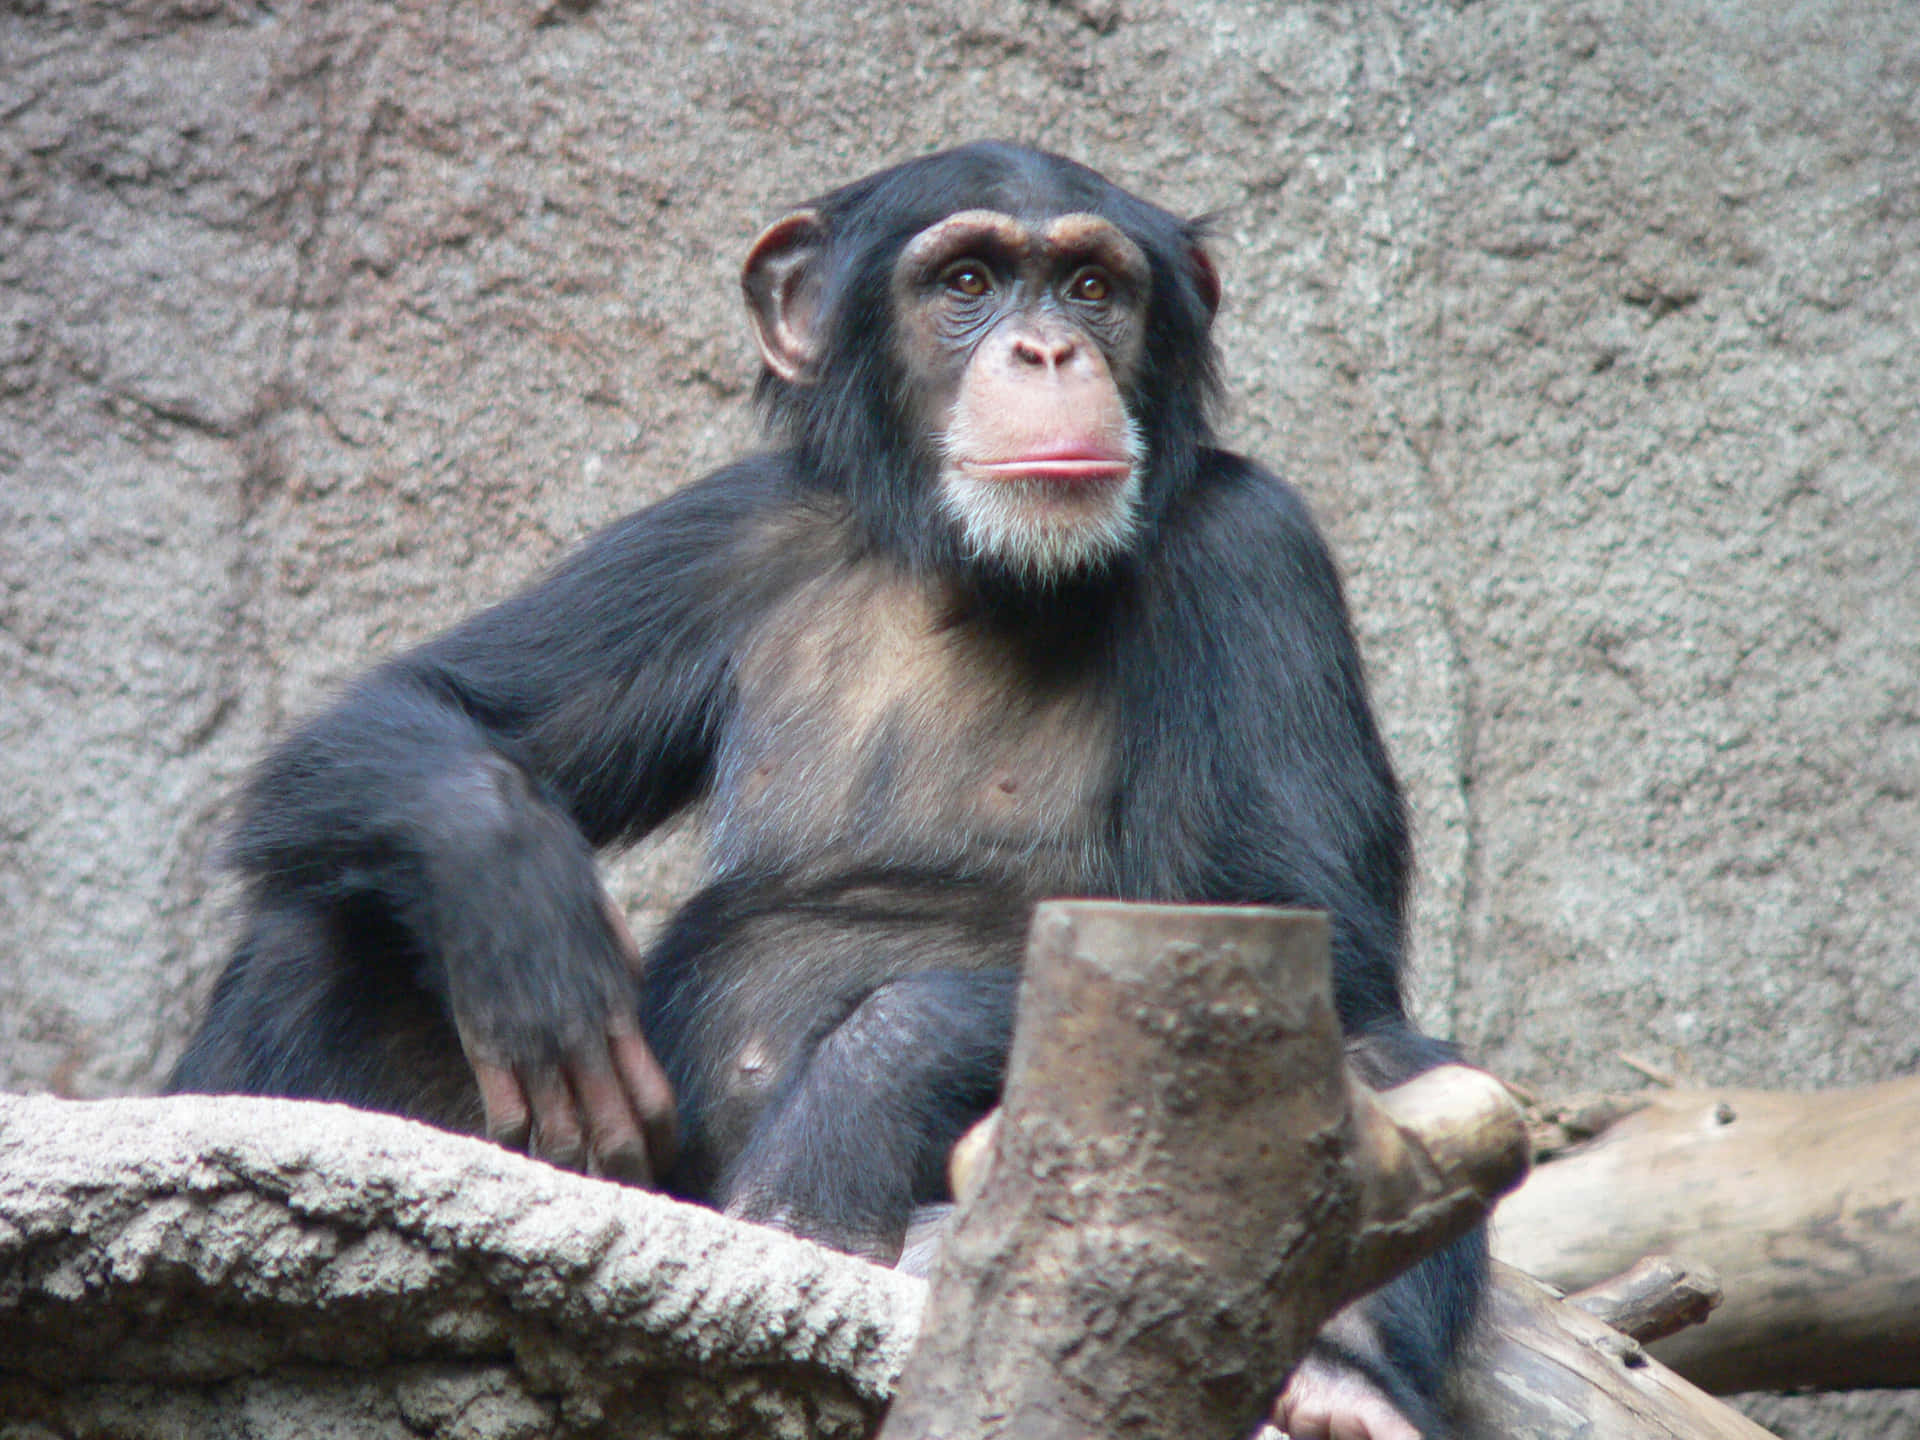 Umgrupo De Chimpanzés A Brincar No Seu Habitat Natural.